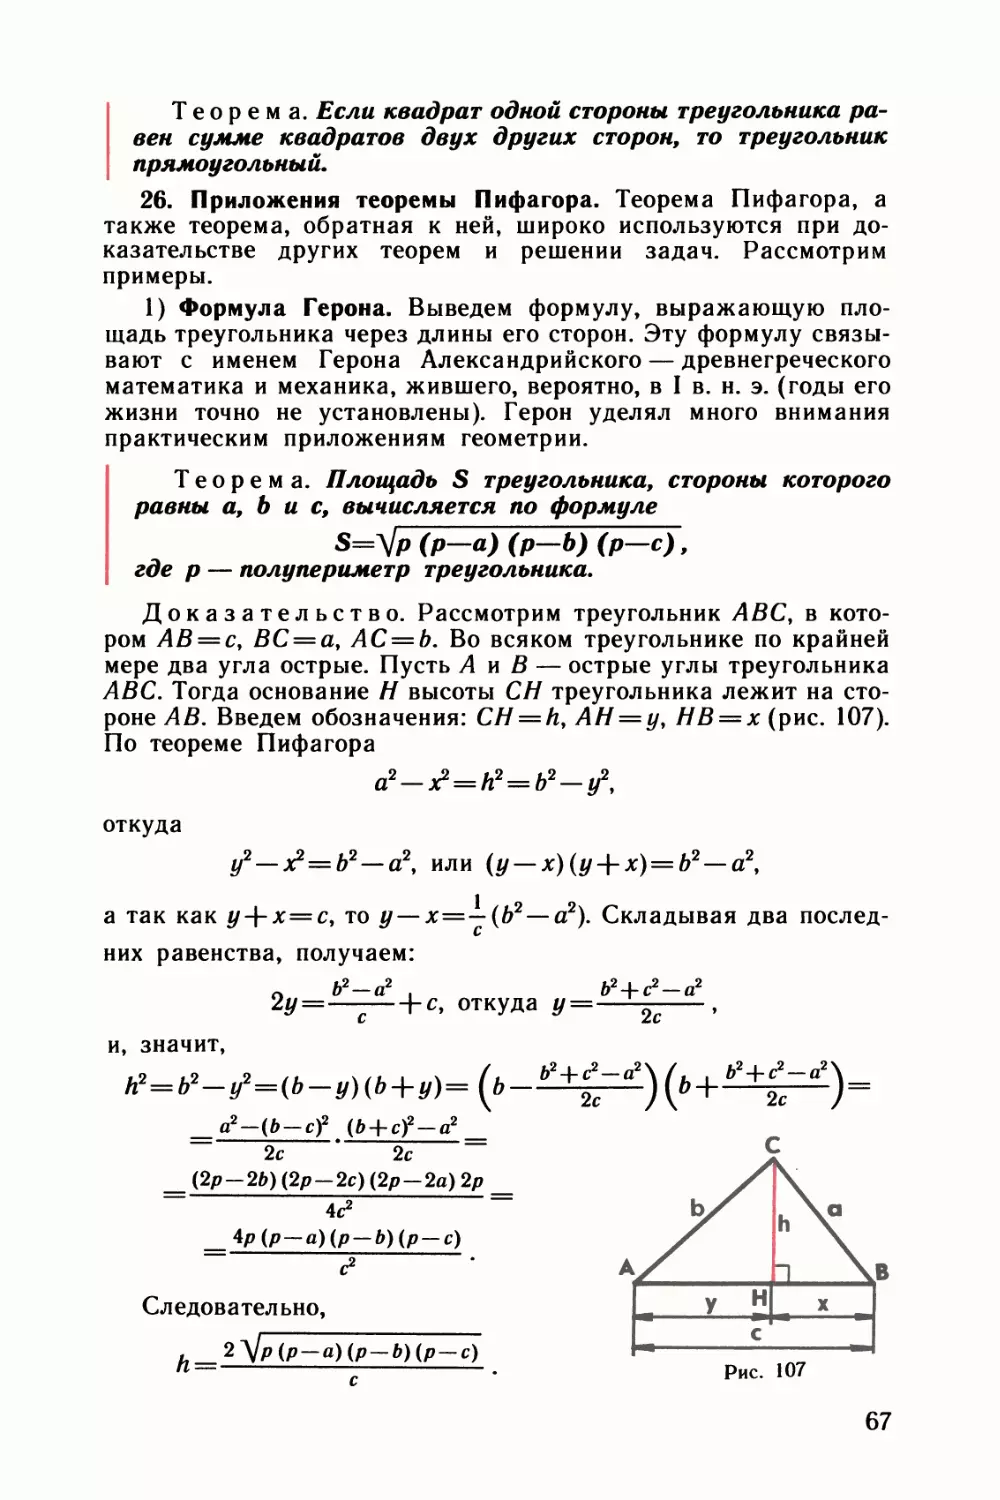 26. Приложения теоремы Пифагора